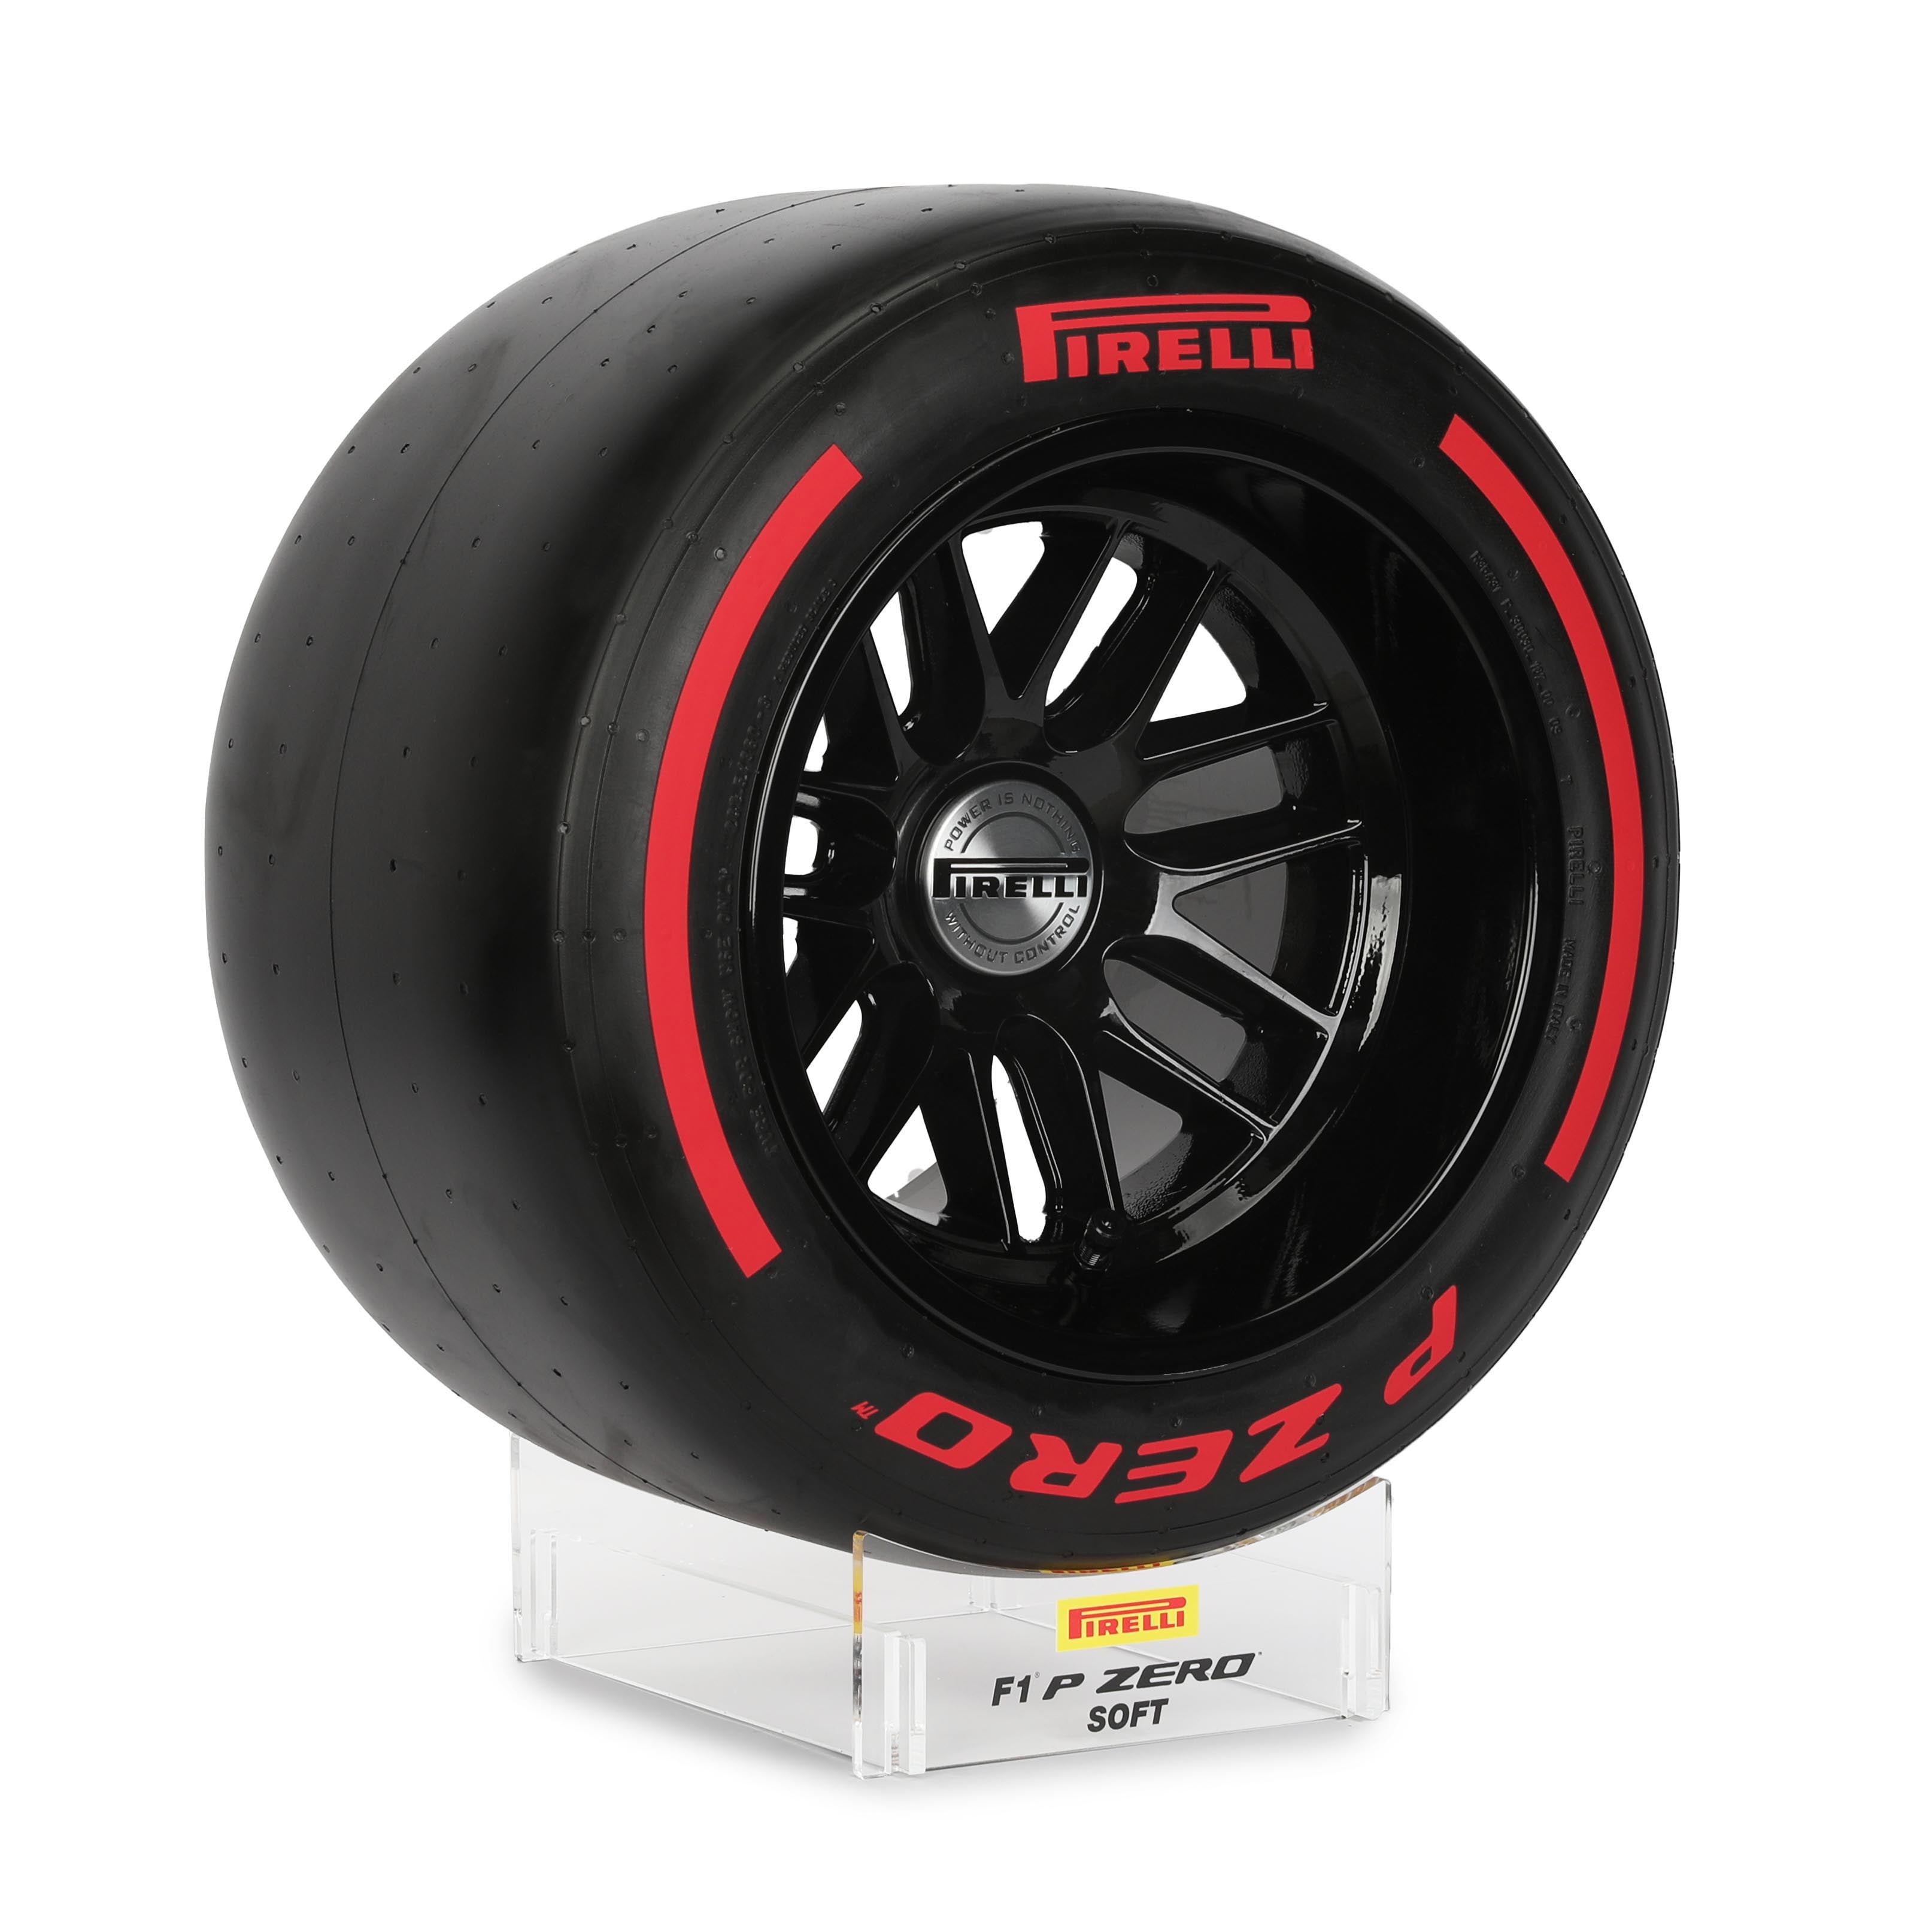 Pirelli Wind Tunnel Tyre - Red Soft Compound